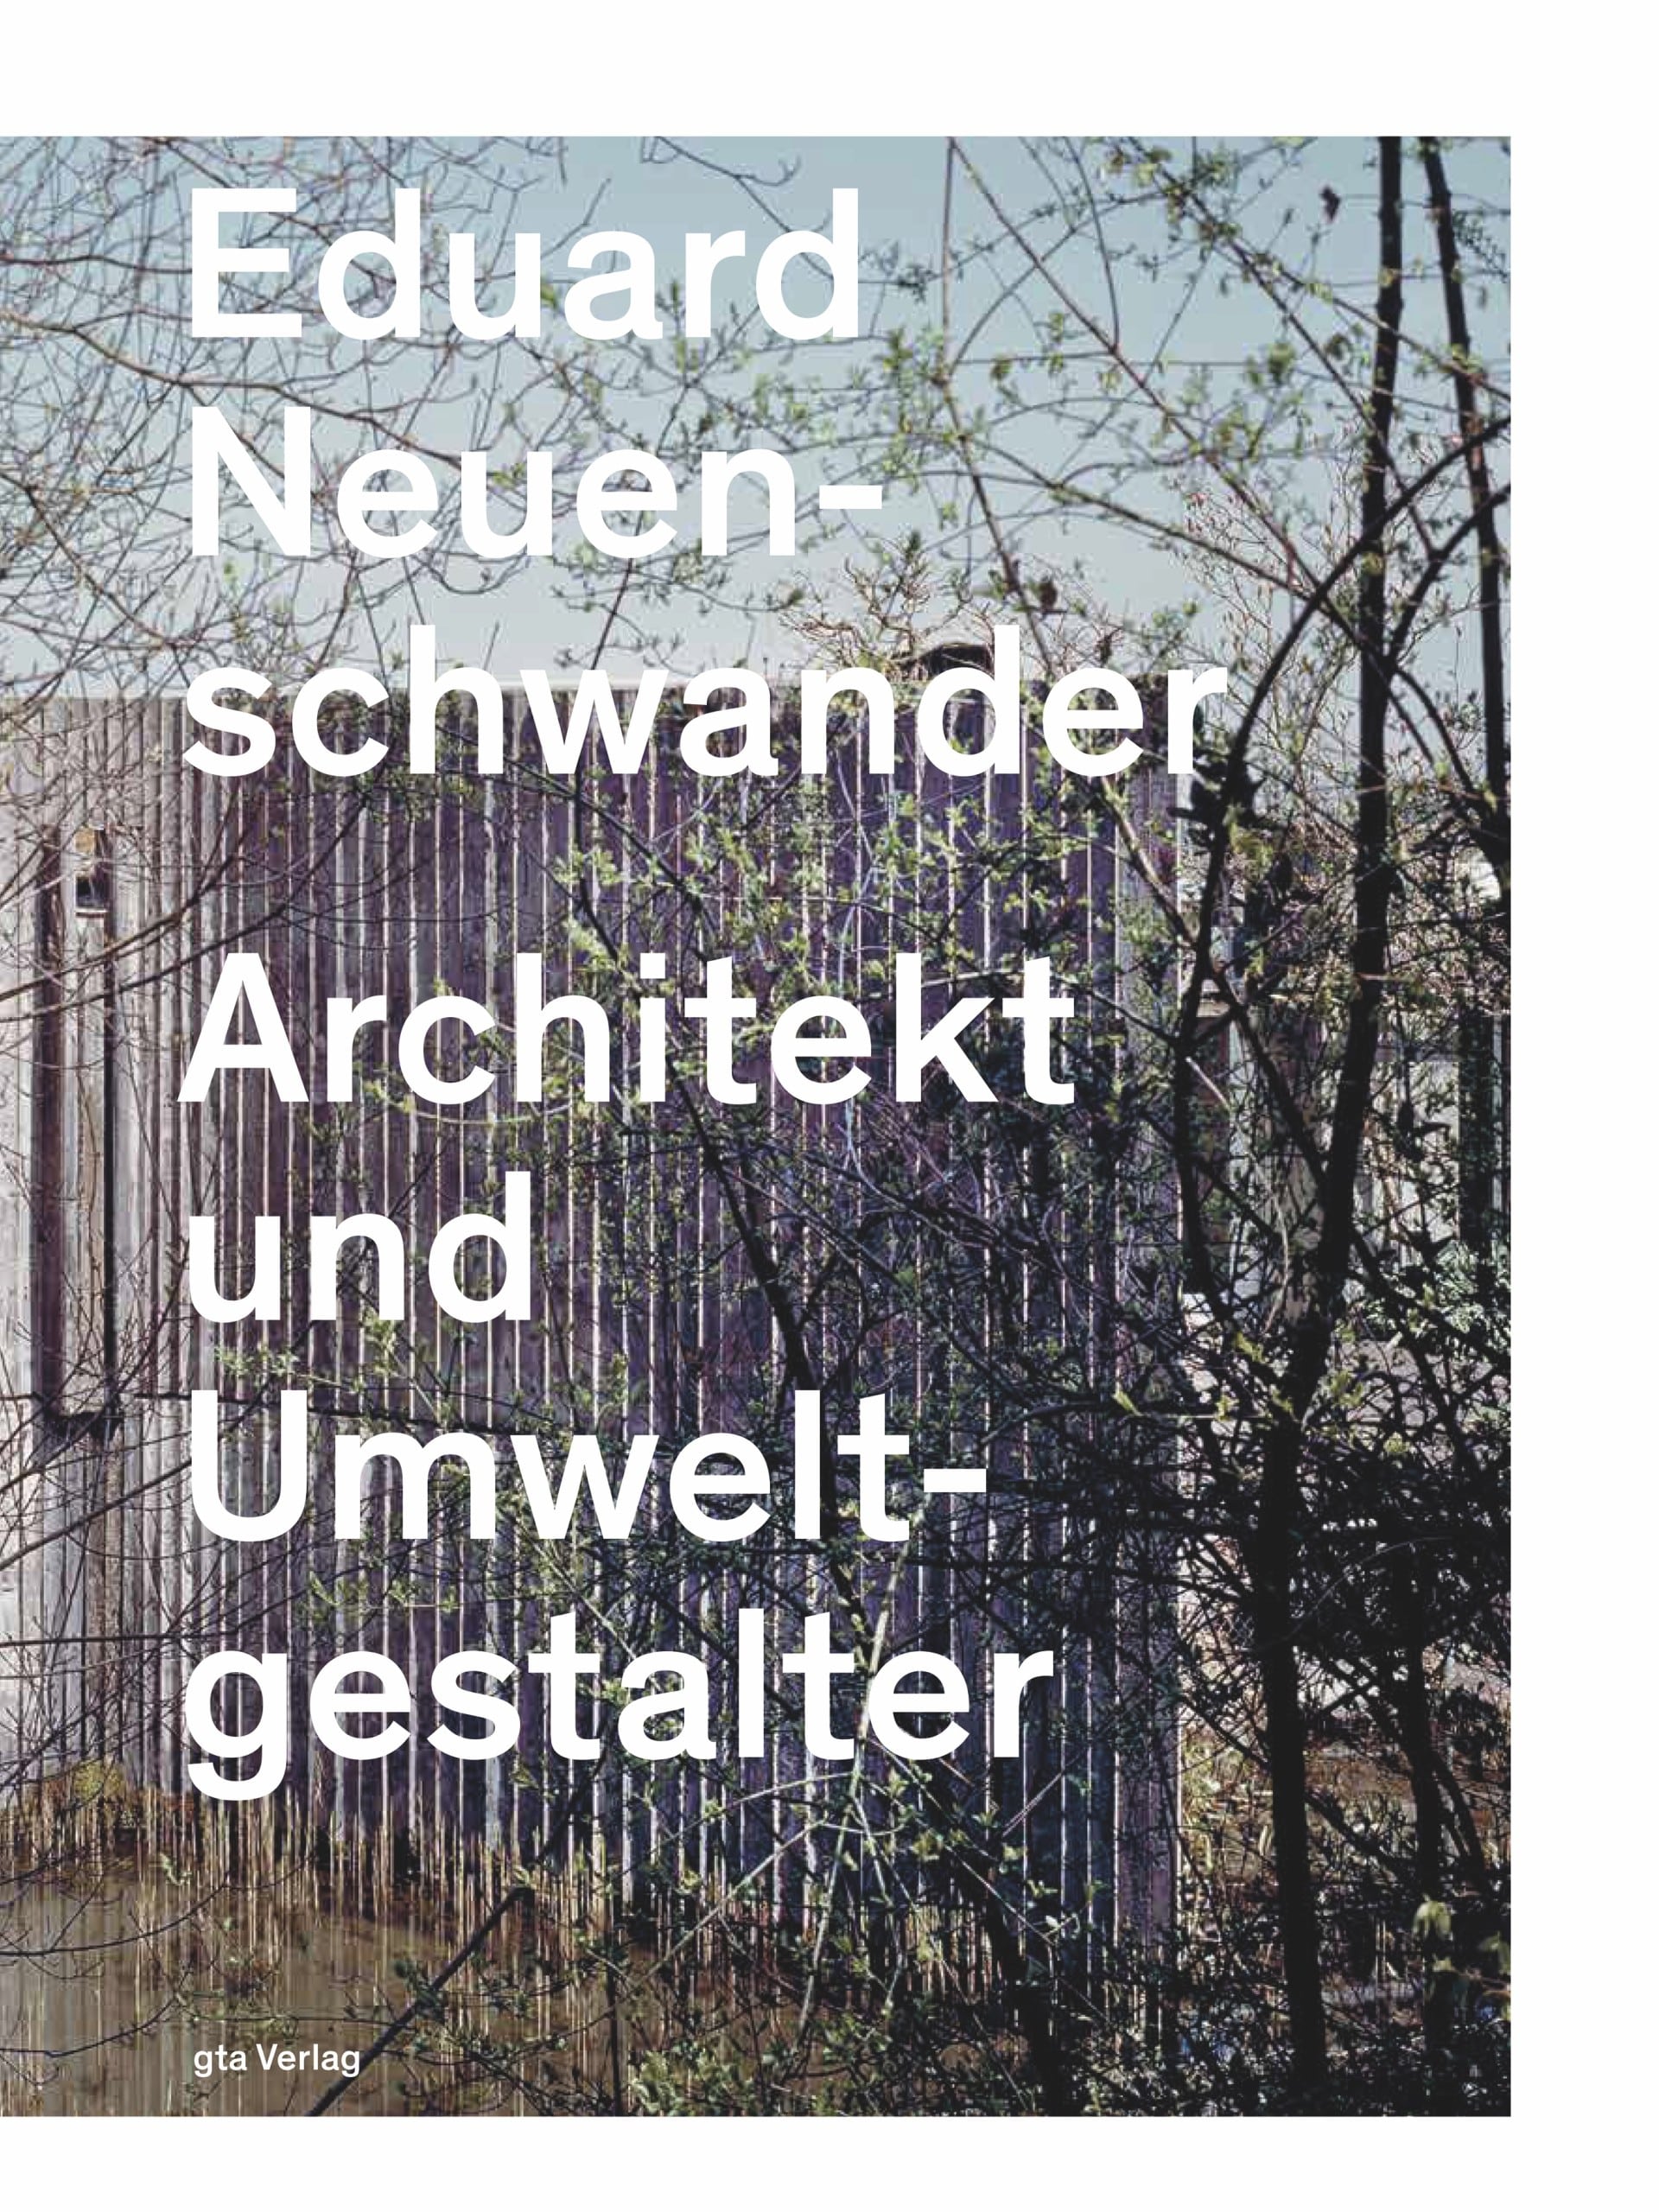 Eduard Neuenschwander. Architekt und Umweltgestalter, Cover: gta Verlag, Foto: Heinrich Helfenstein